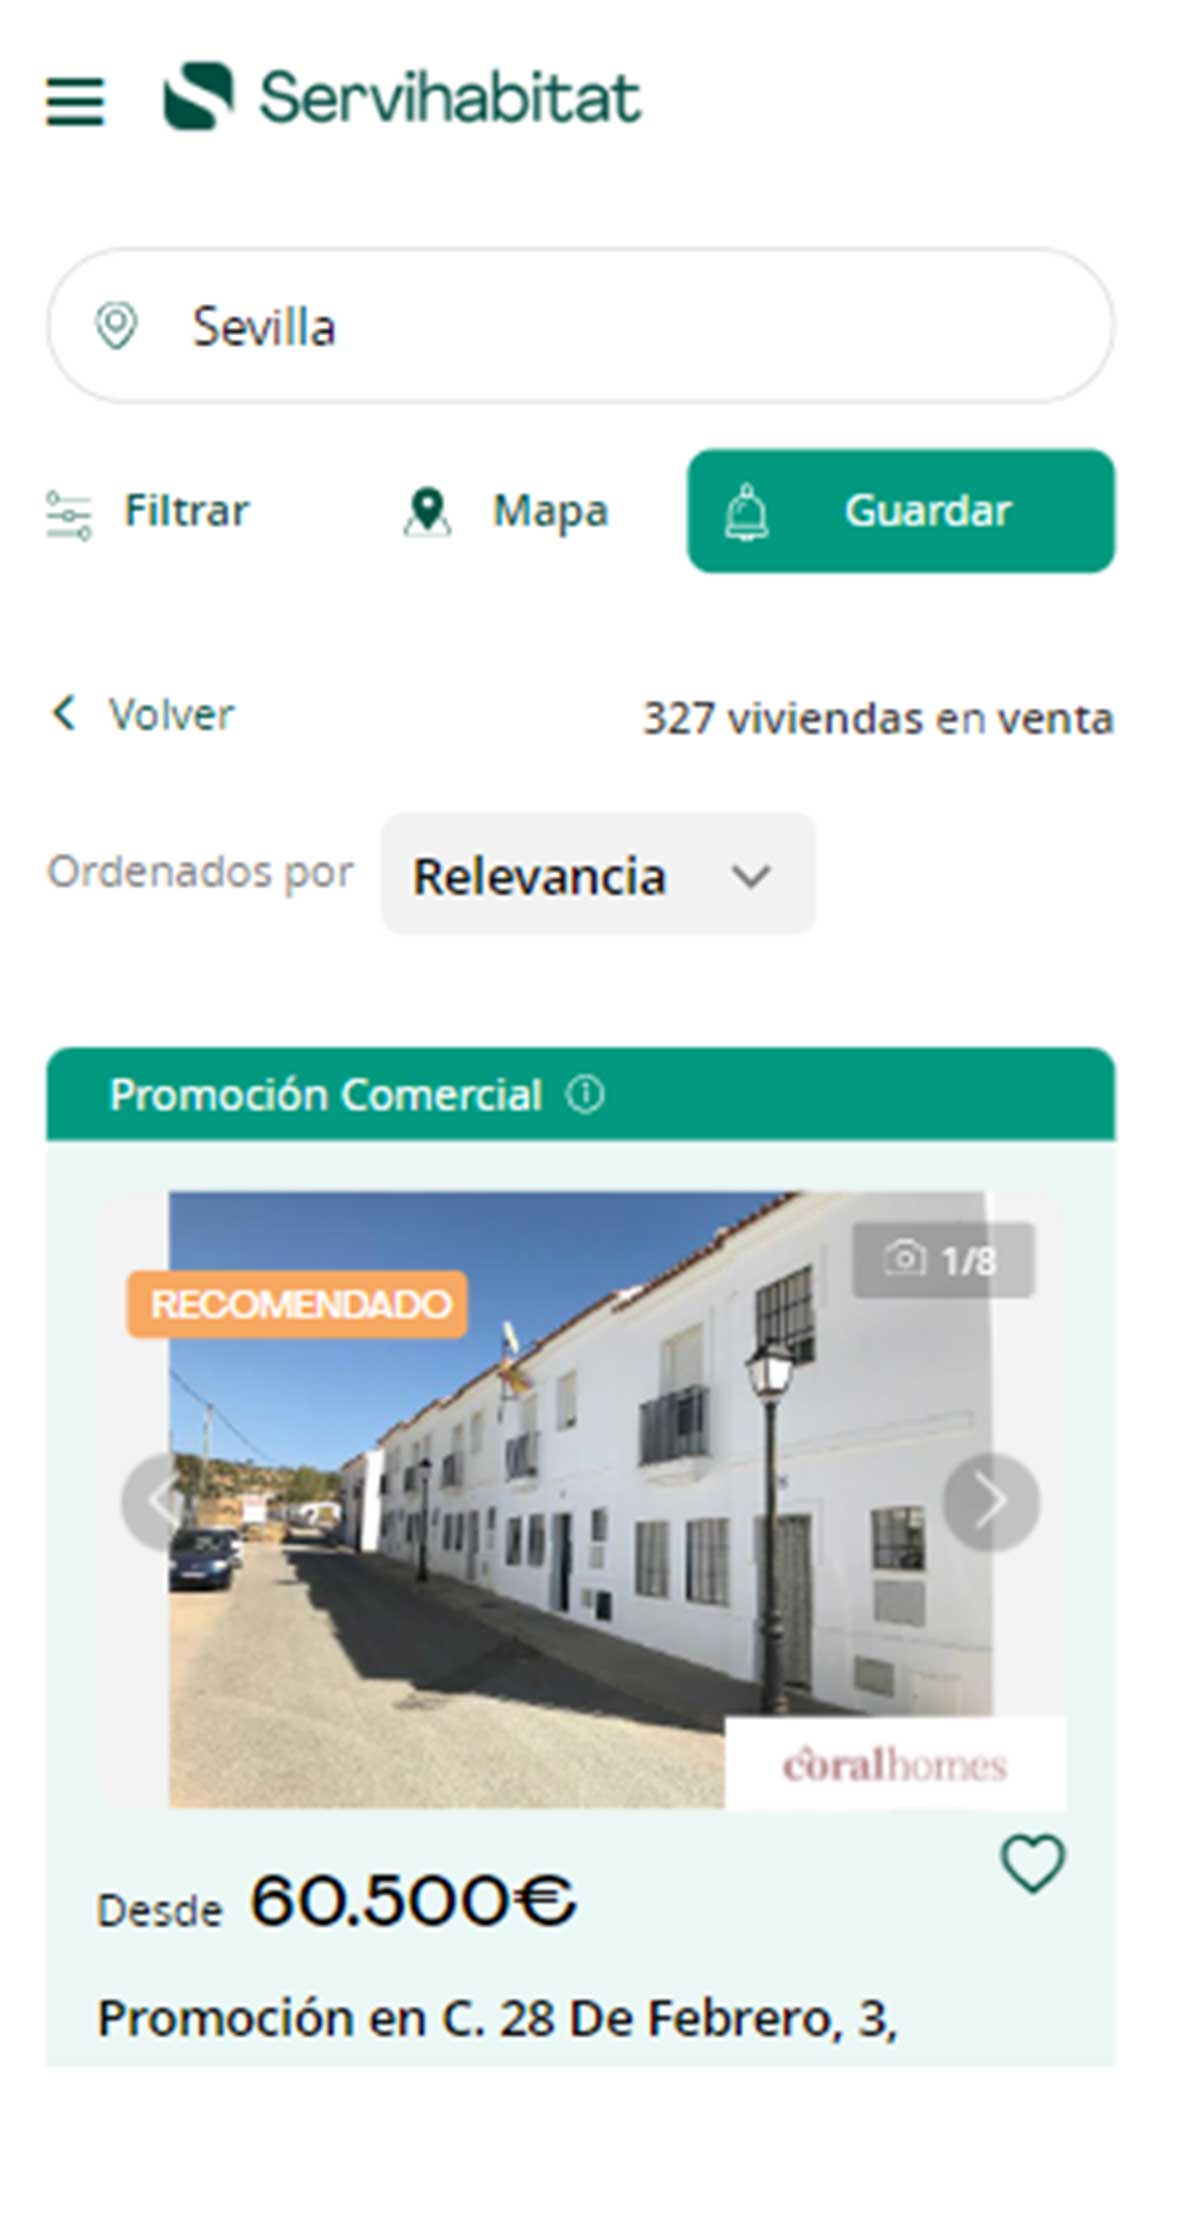 Catálogo de pisos en Sevilla de Servihabitat